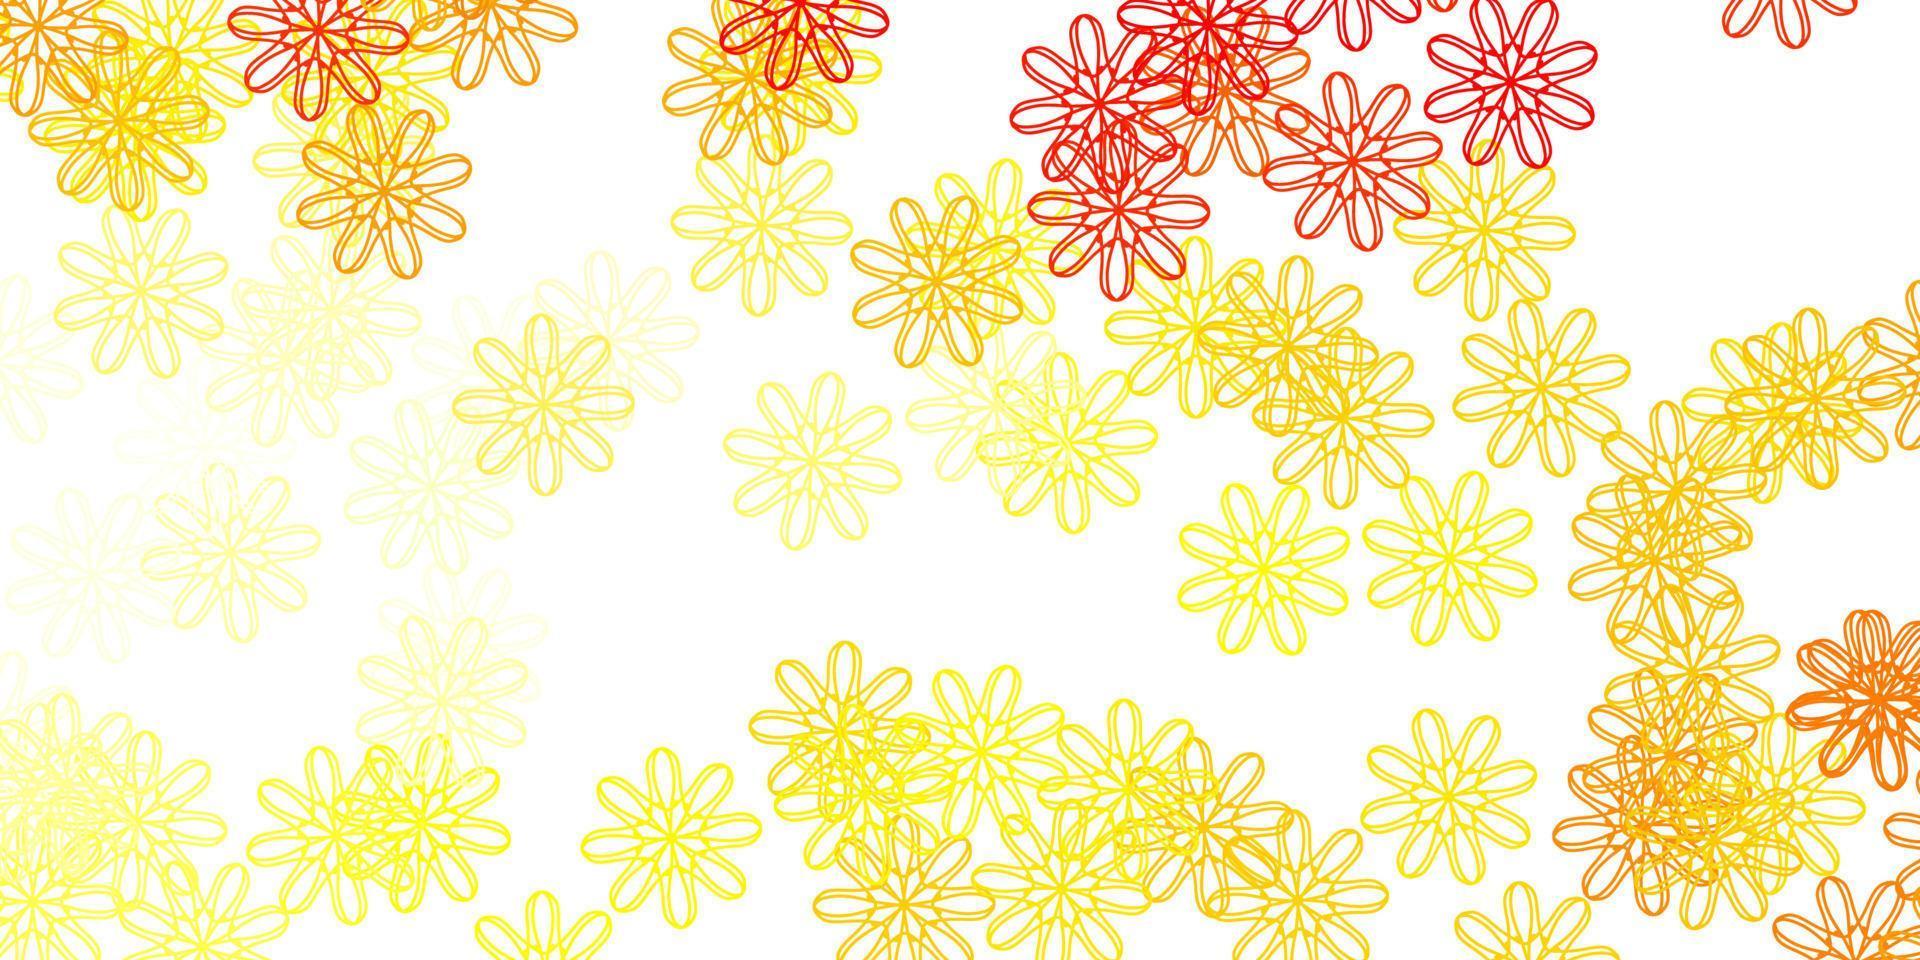 struttura di doodle vettoriale arancione chiaro con fiori.